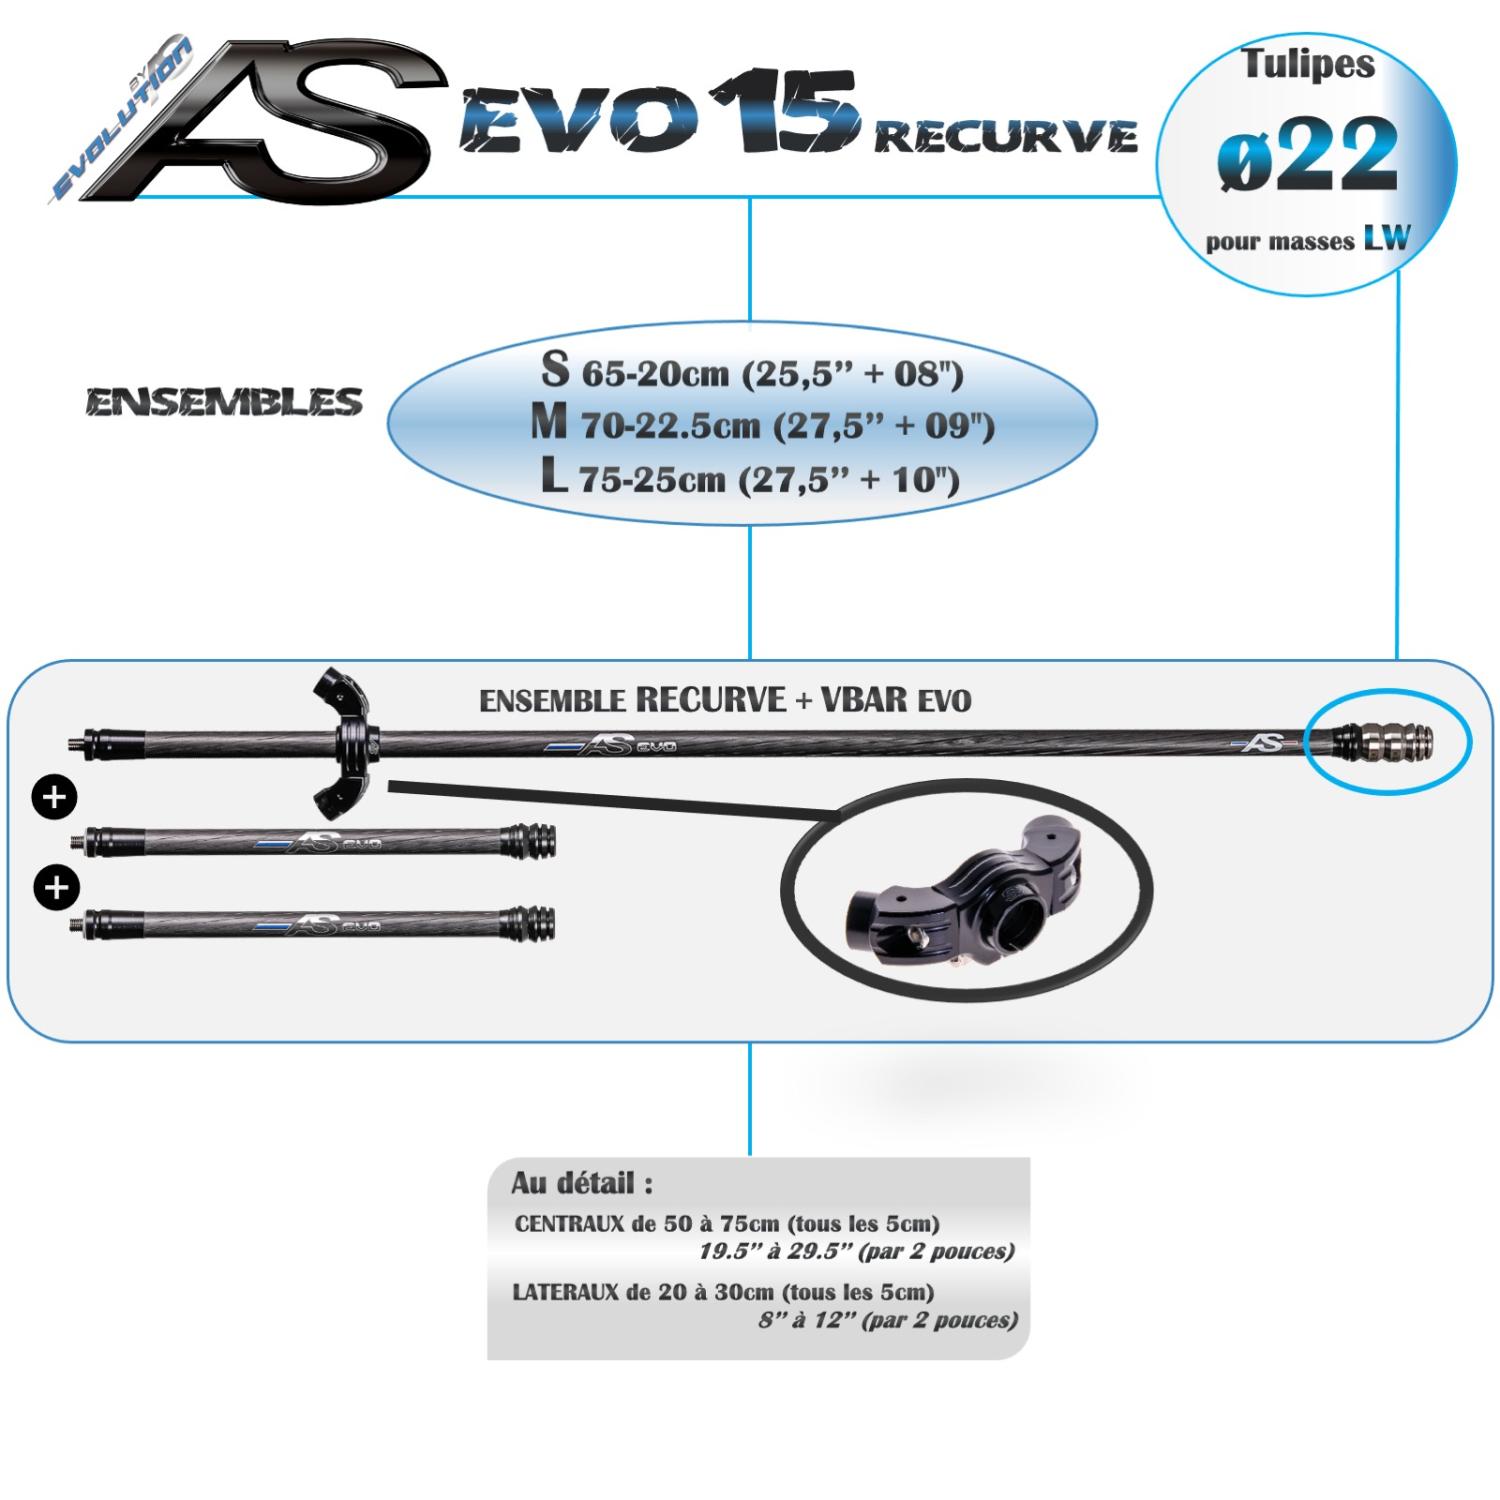 ENSEMBLE EVO 15 RECURVE arc système